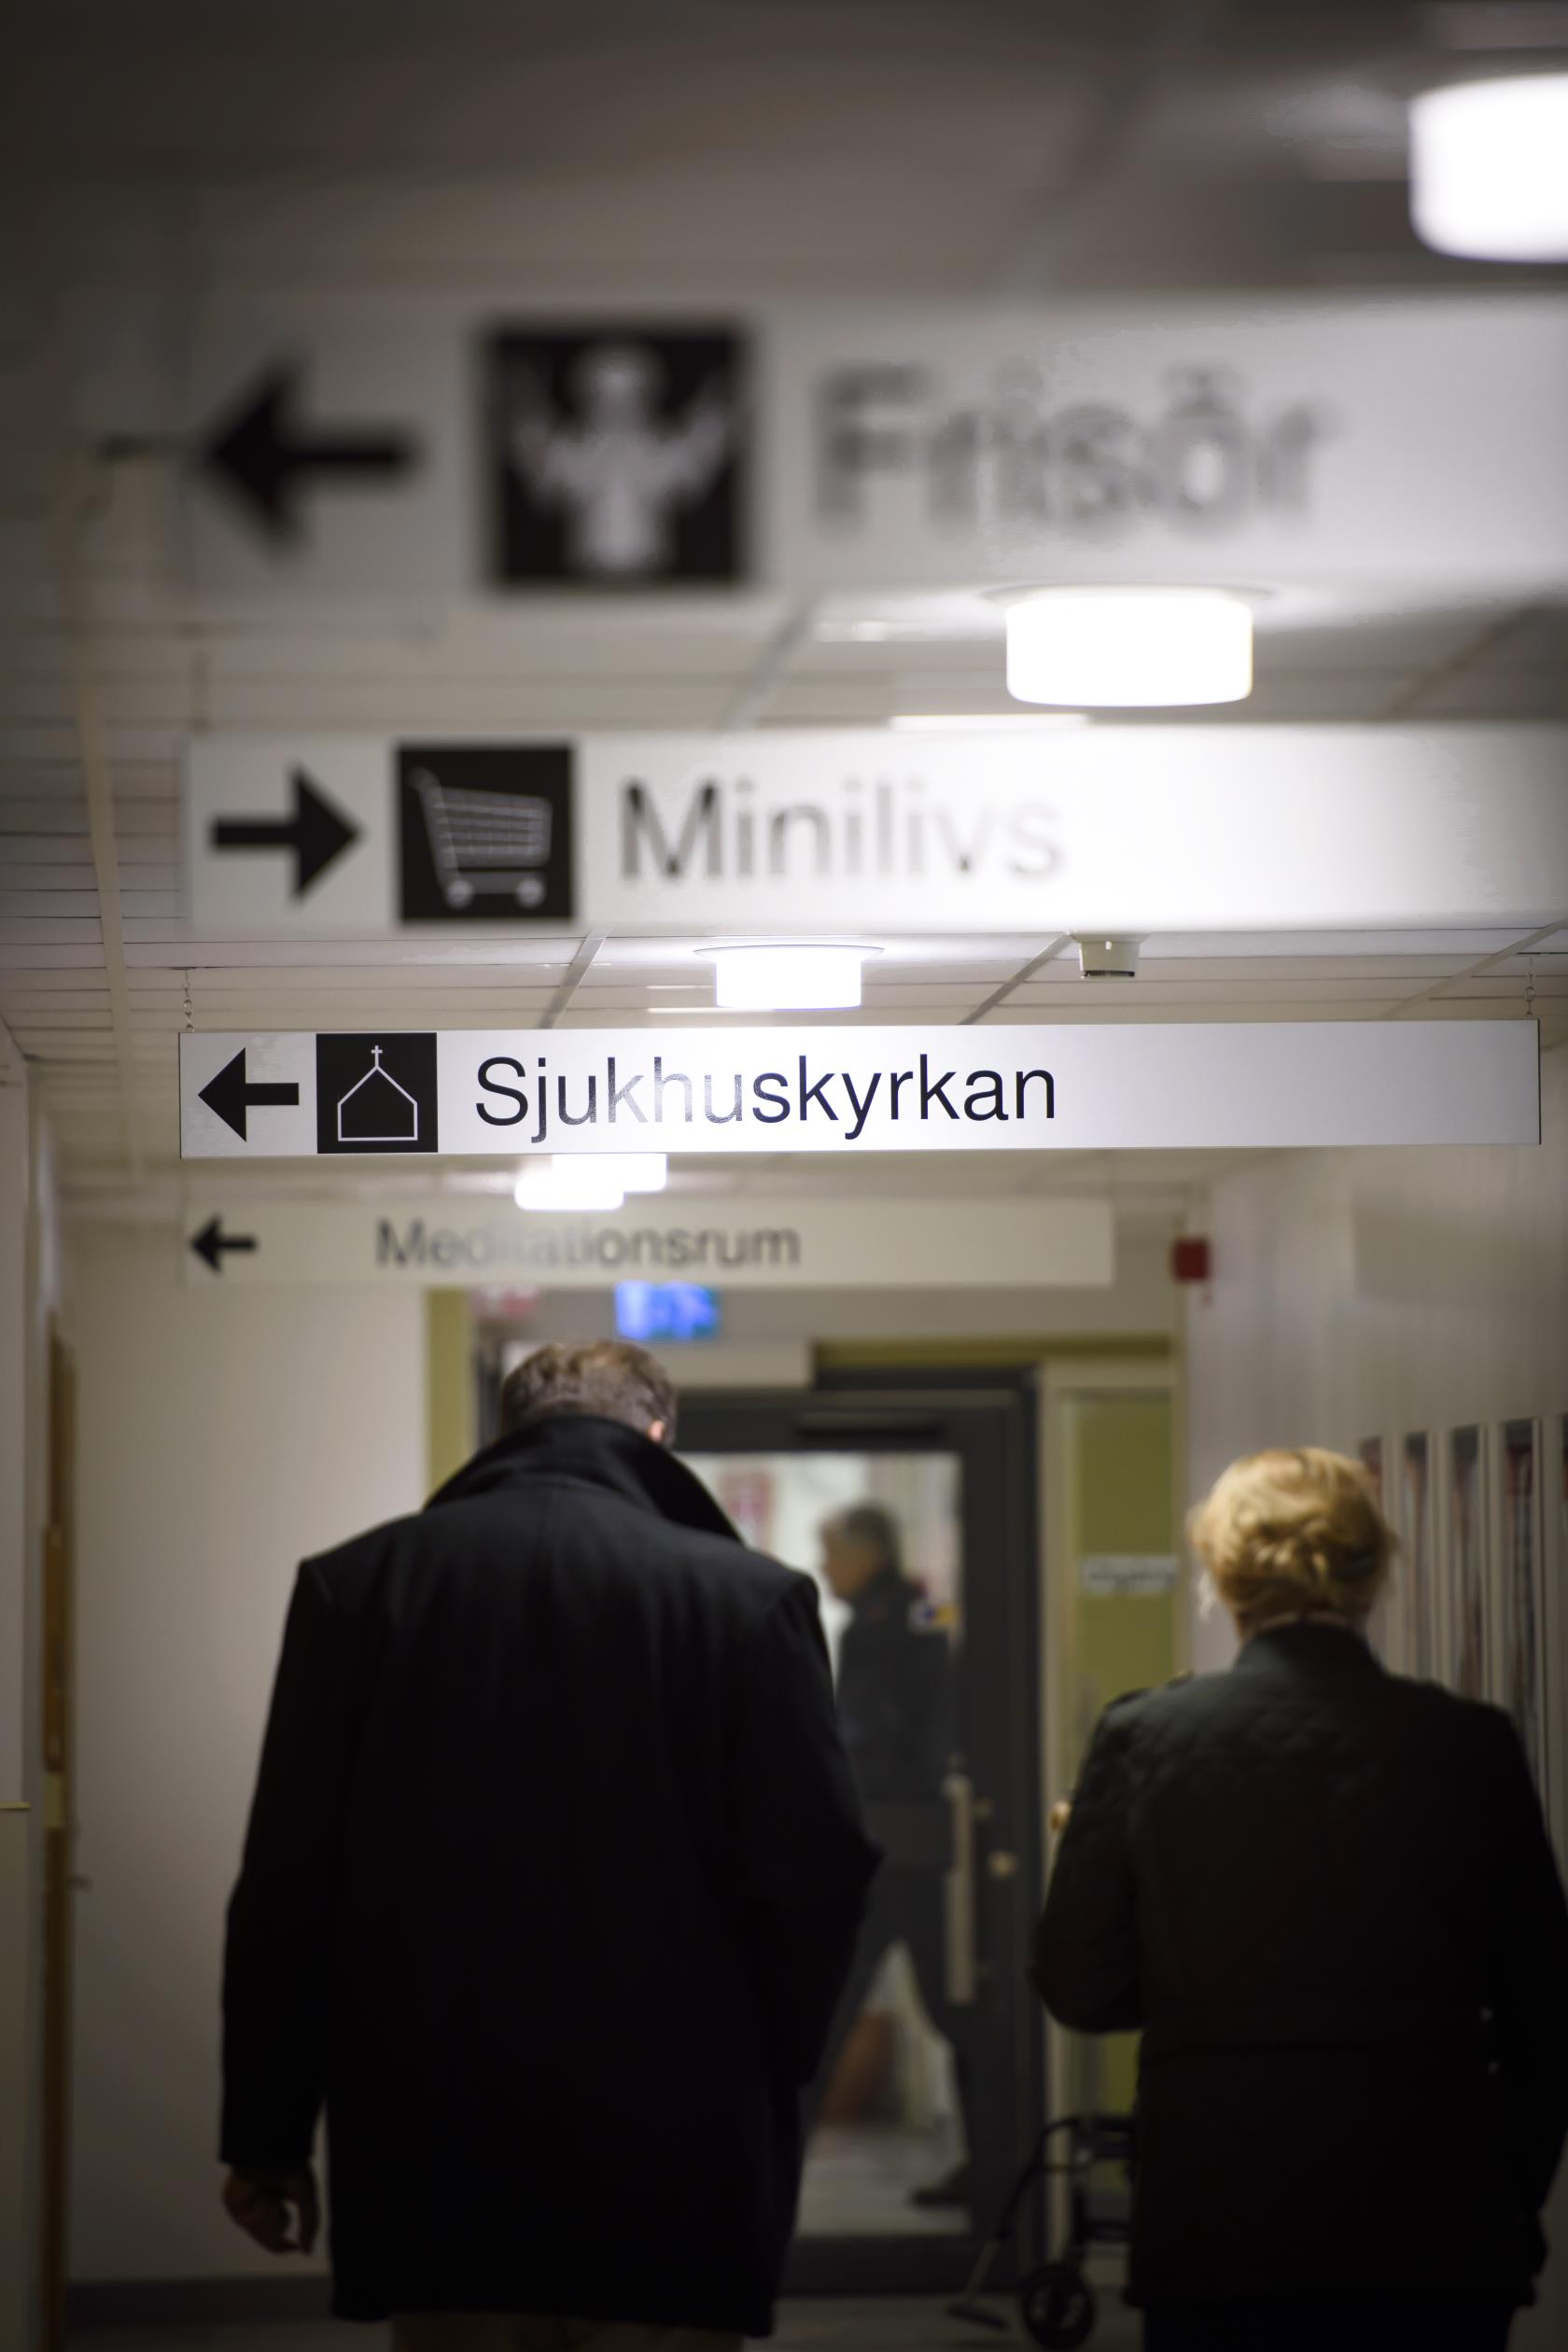 En man och en kvinna går i en korridor. I taket hänger olika skyltar med texterna Frisör, Minilivs och Sjukhuskyrkan.